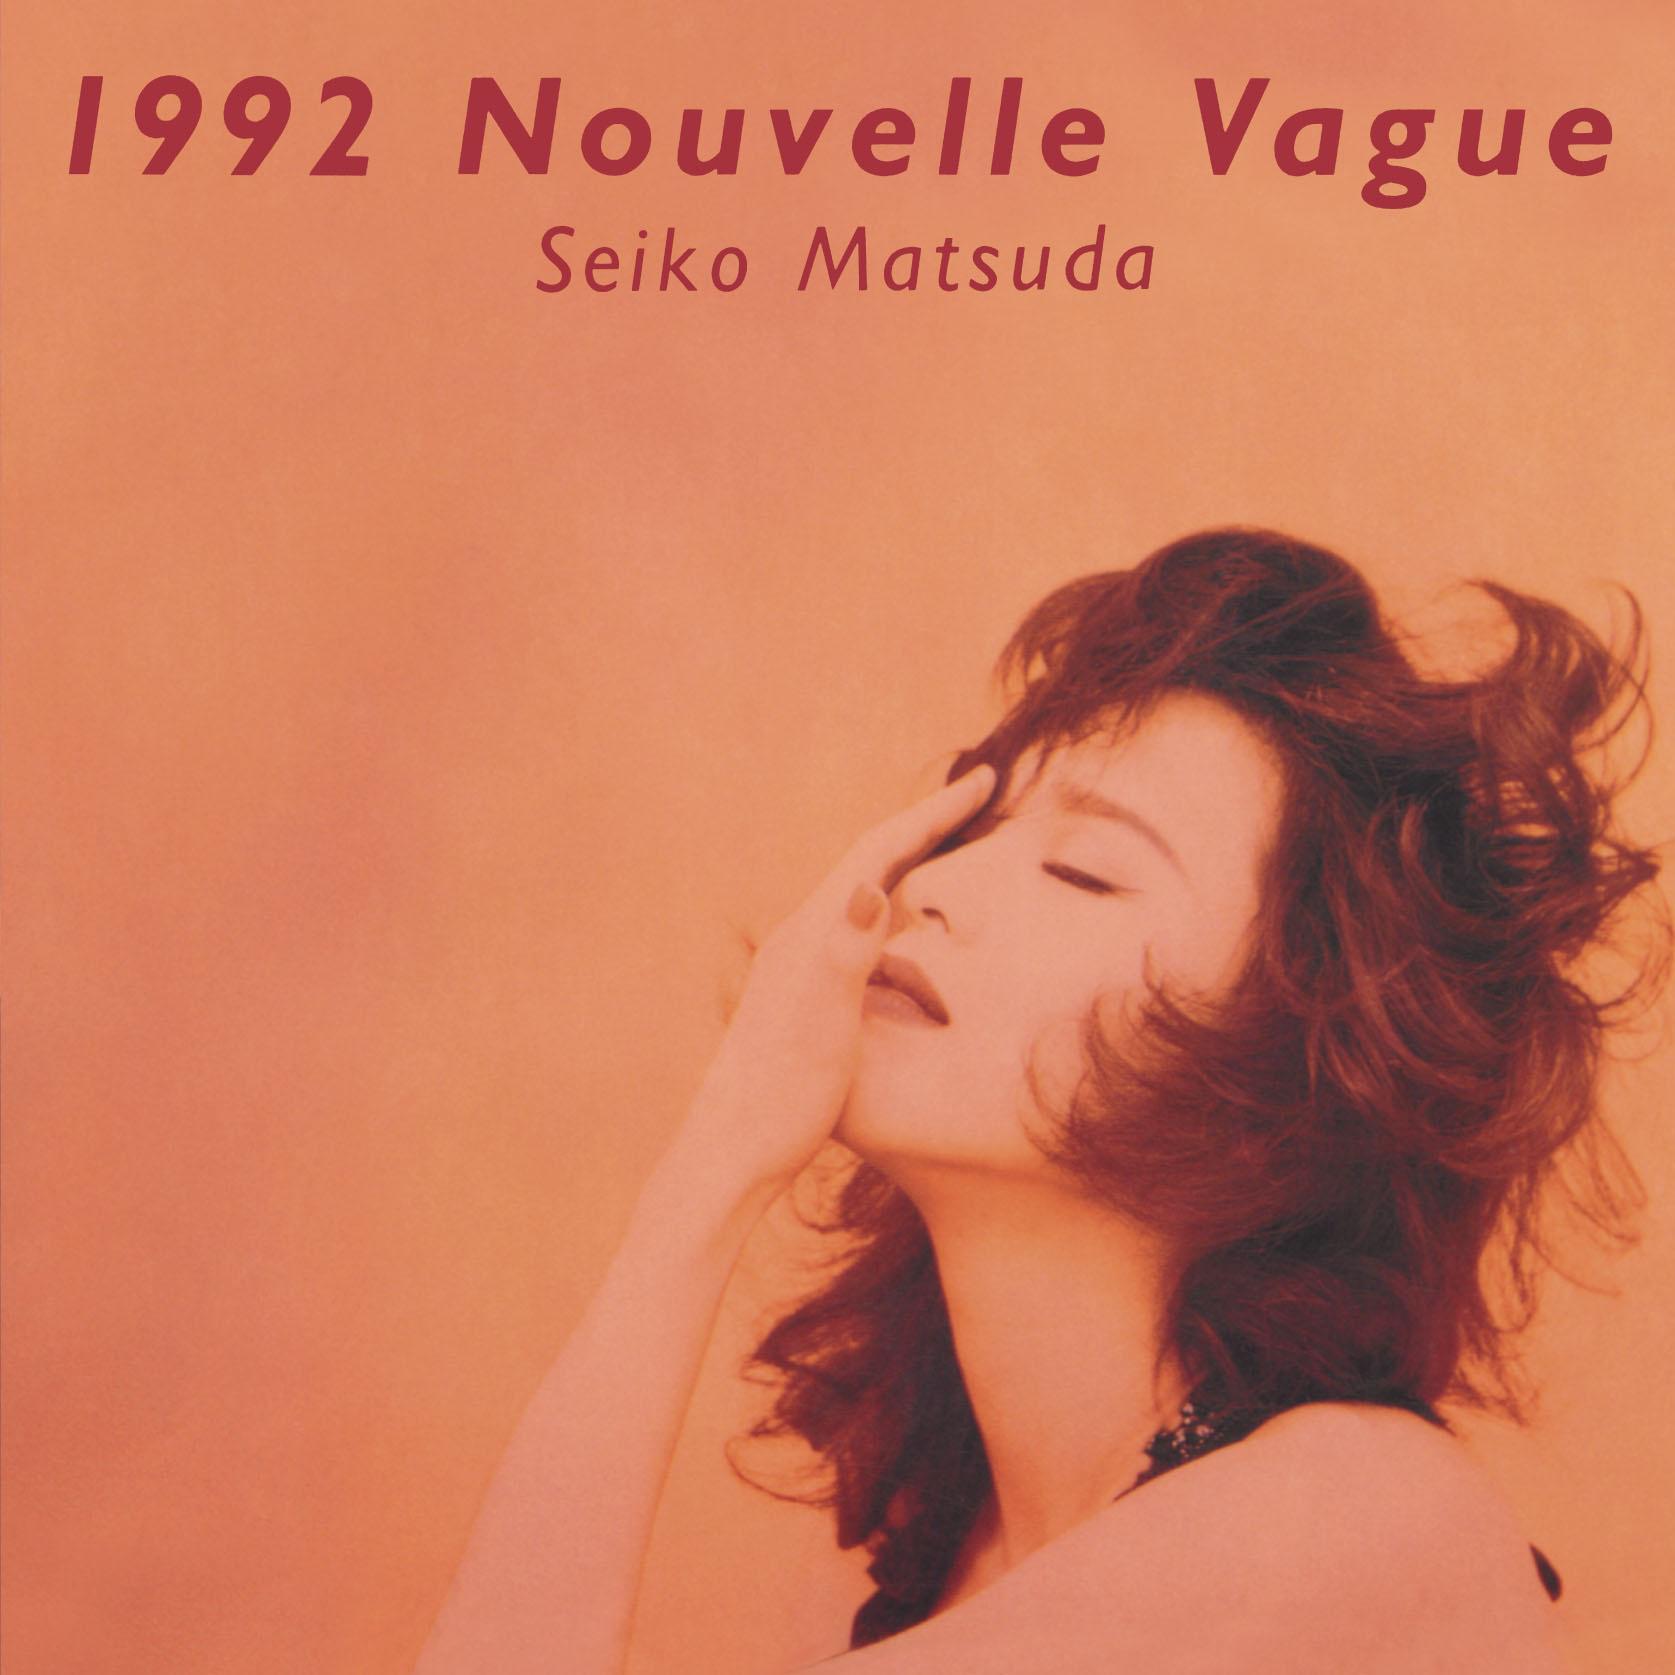 1992 Nouvelle Vague专辑